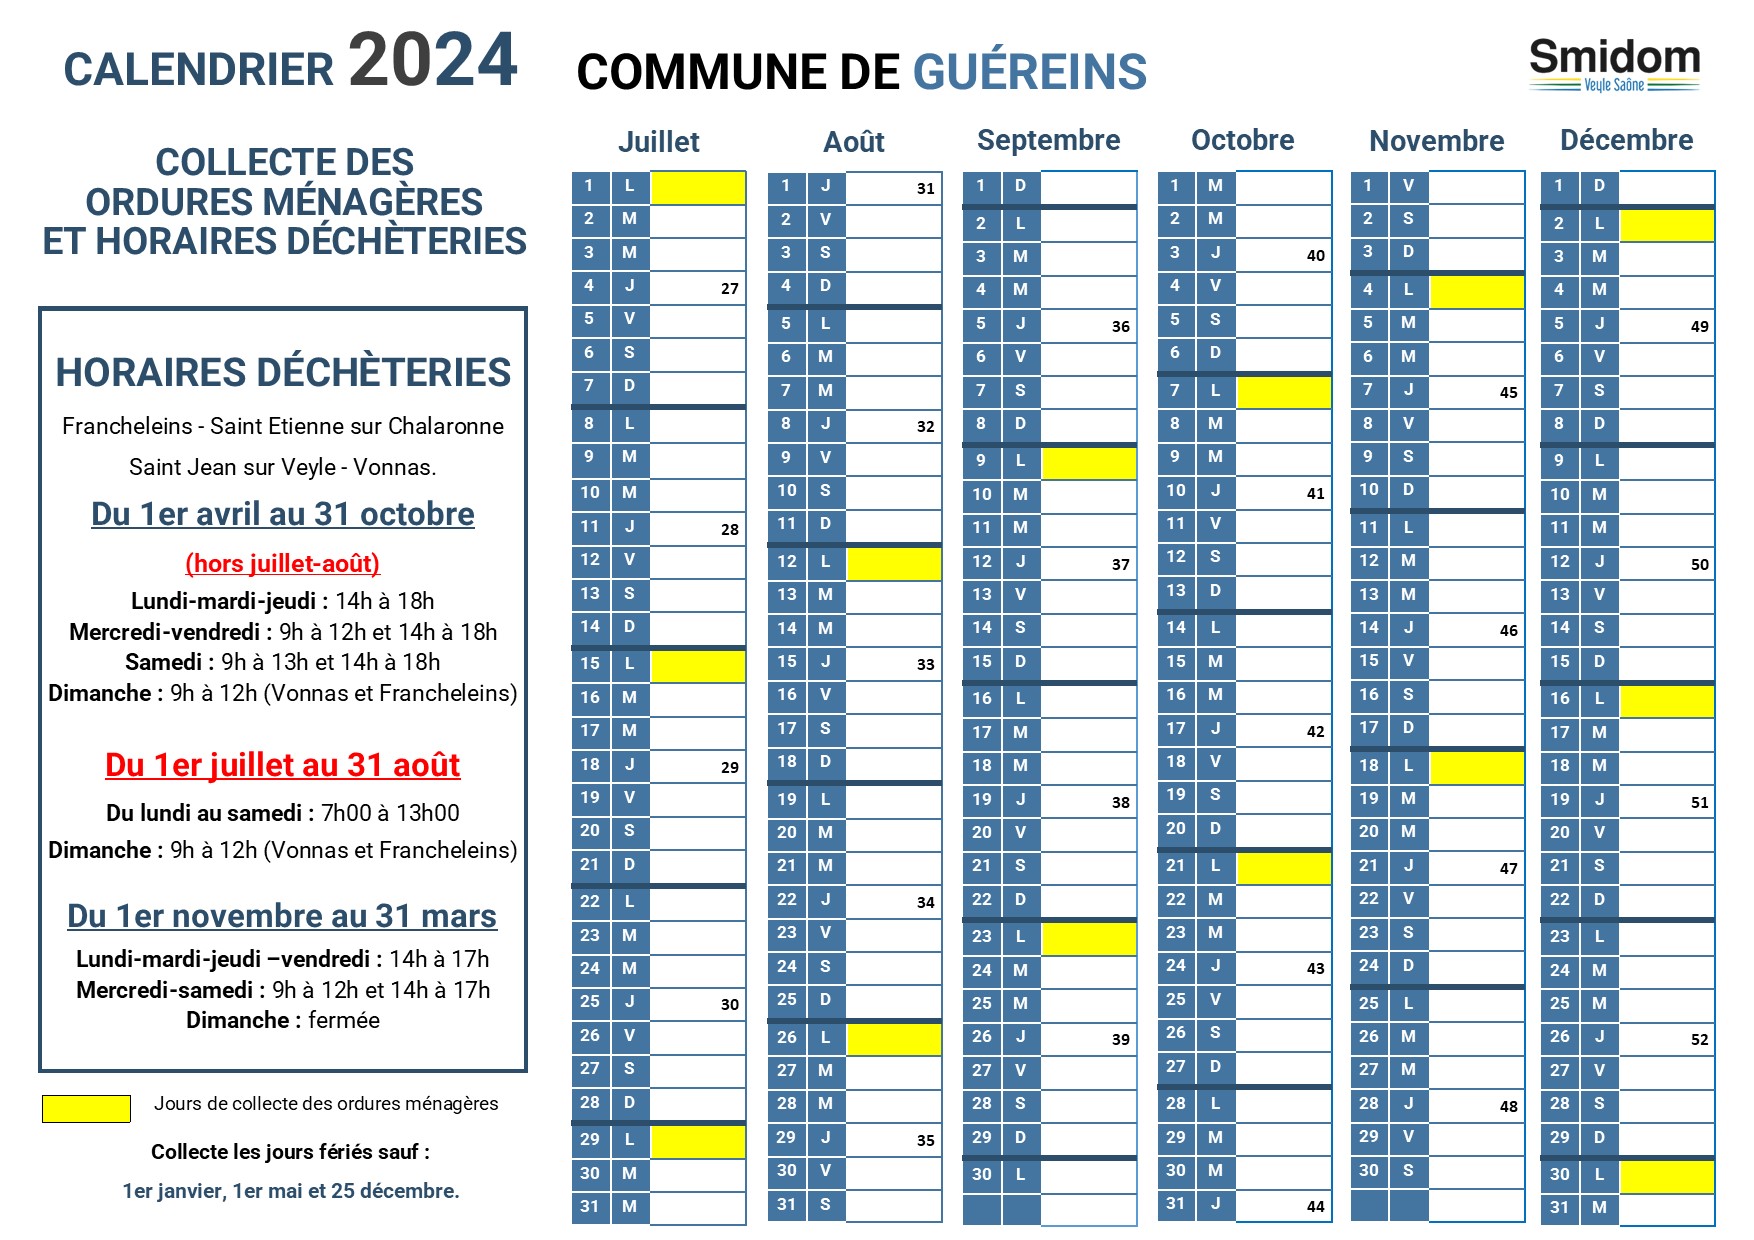 GUEREINS - Calendrier 2024 - 2.jpg